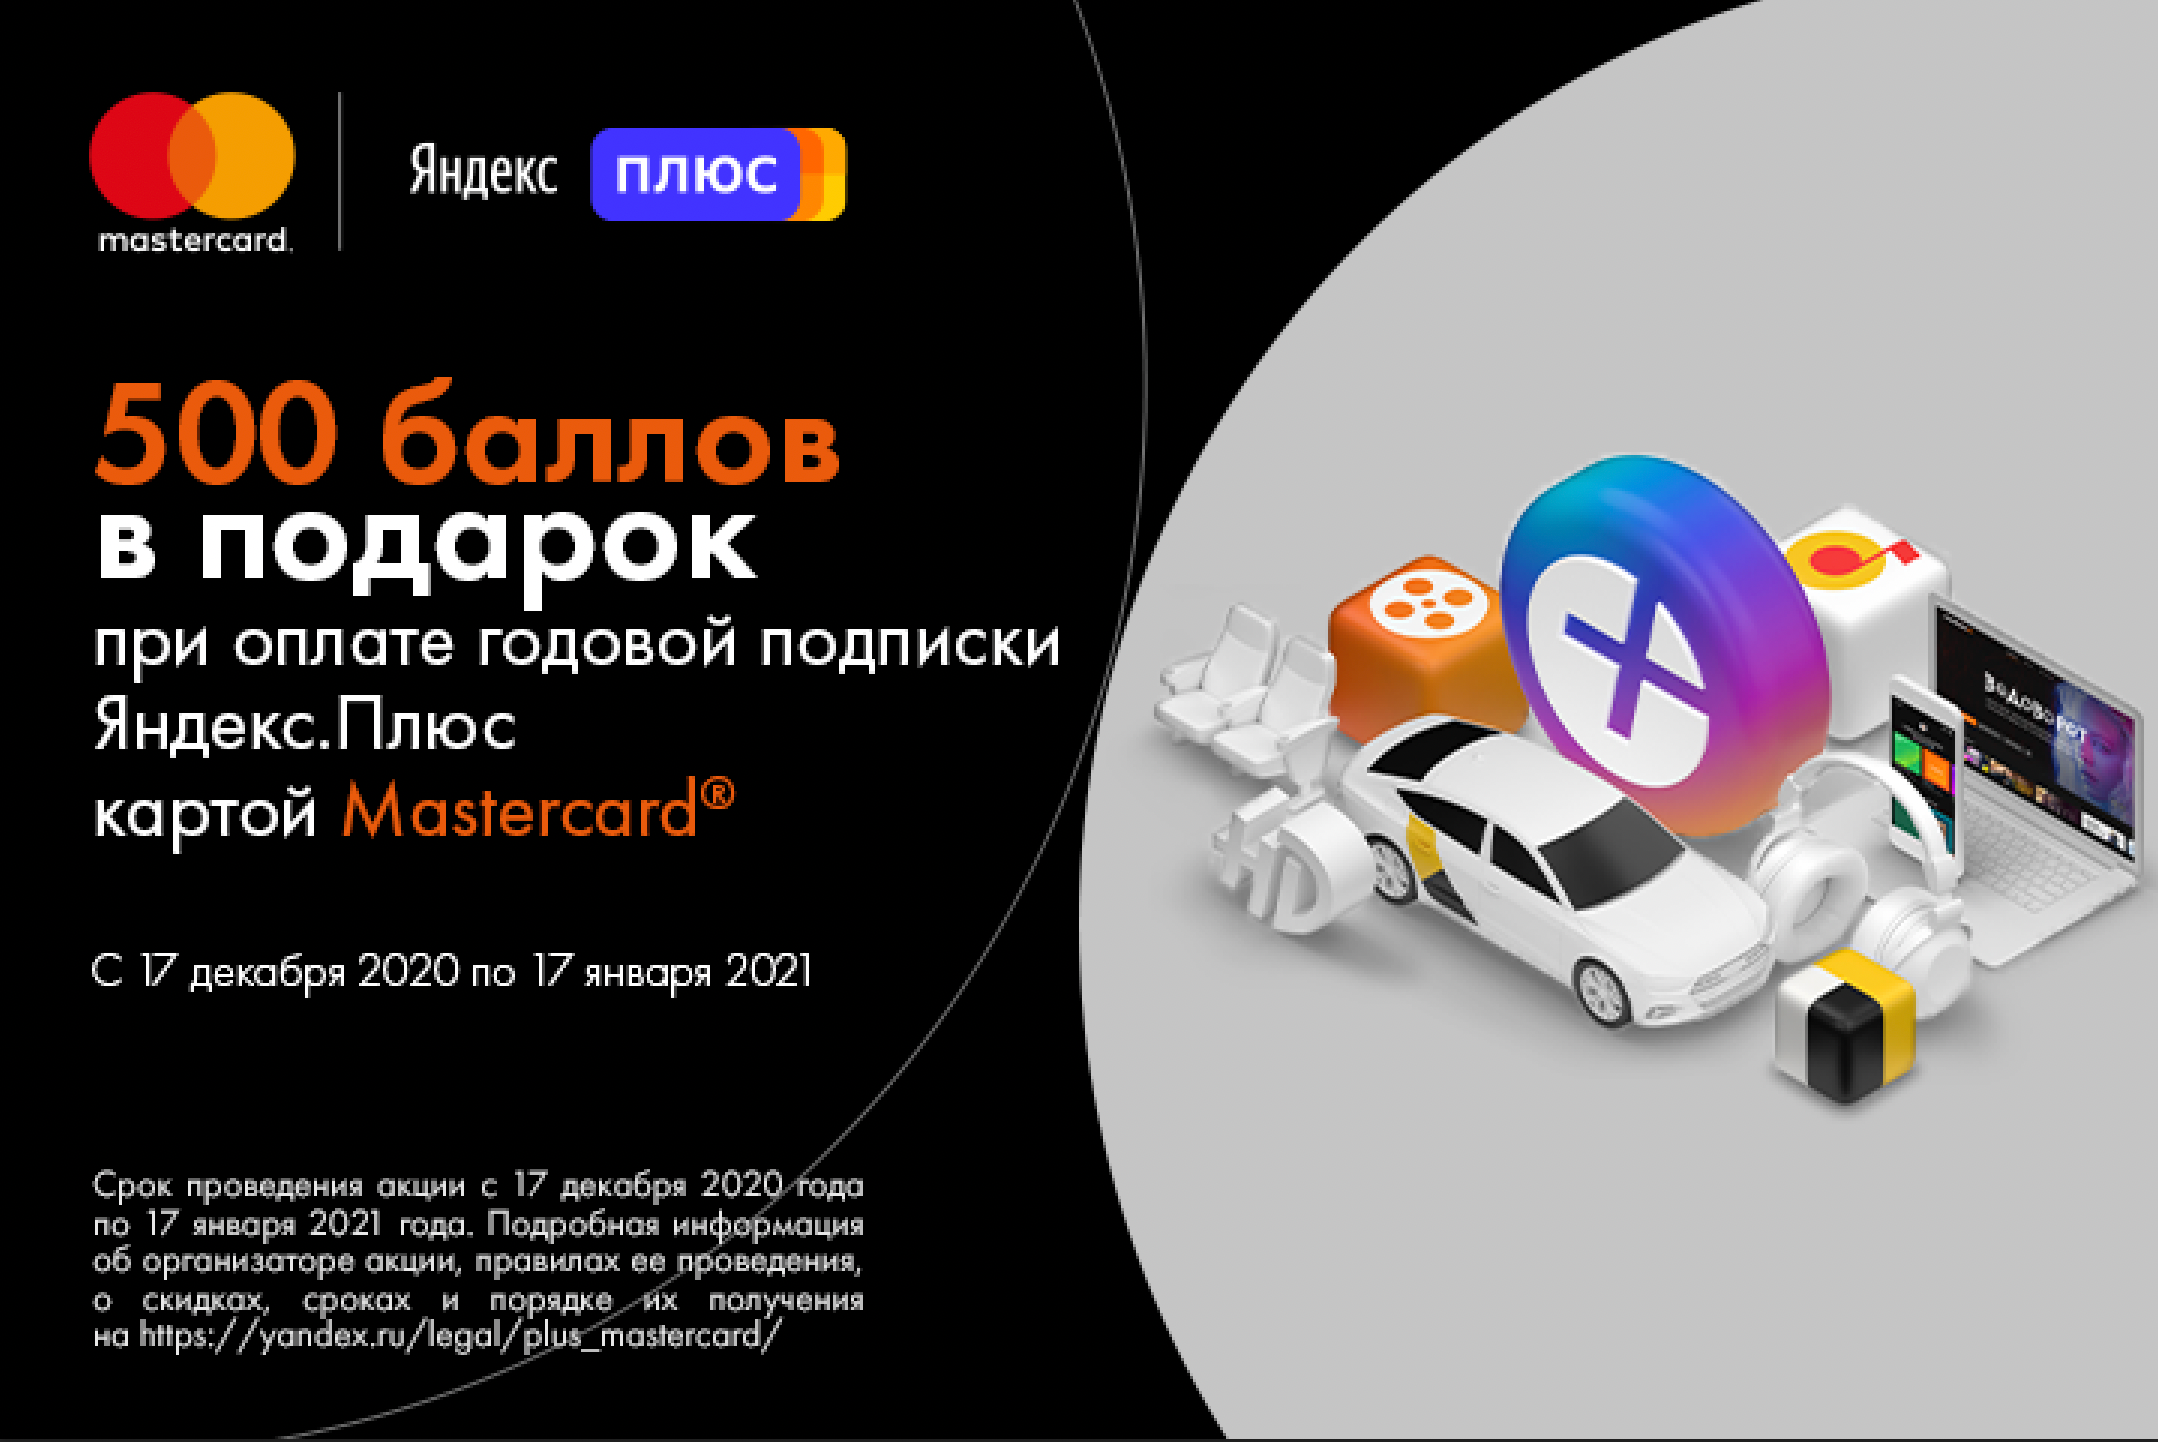 Акция от Mastercard: получите баллы «Яндекс Плюс» при оплате годовой подписки